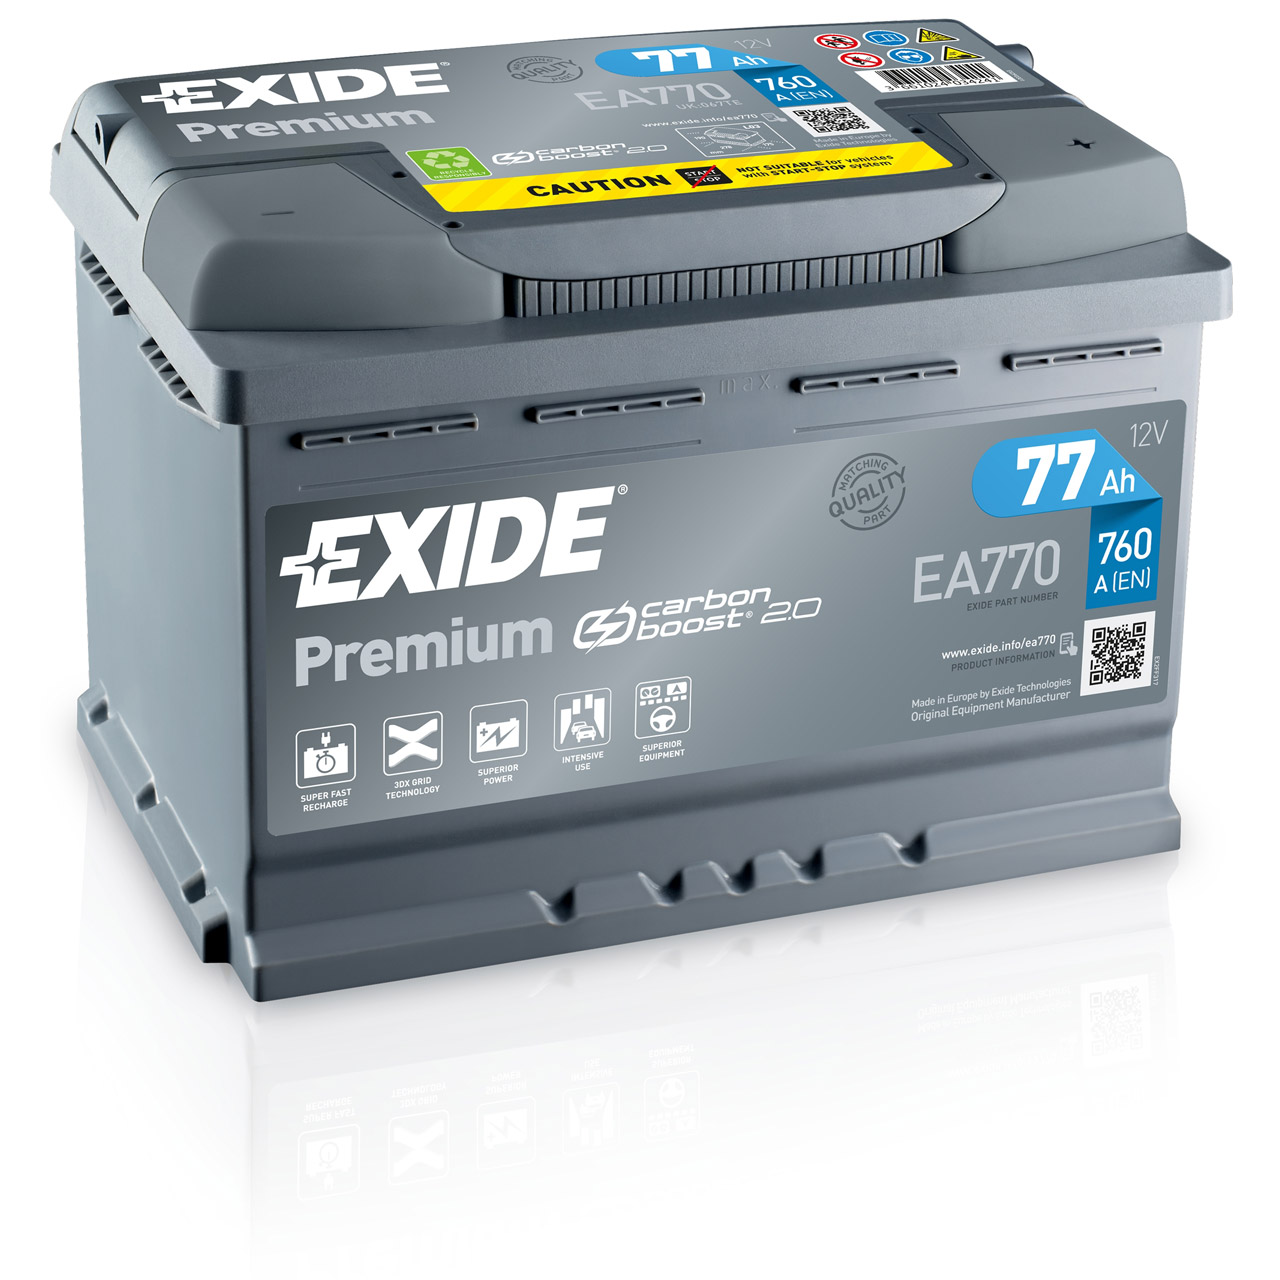 Exide EA770 Premium Carbon Boost Autobatterie 77Ah